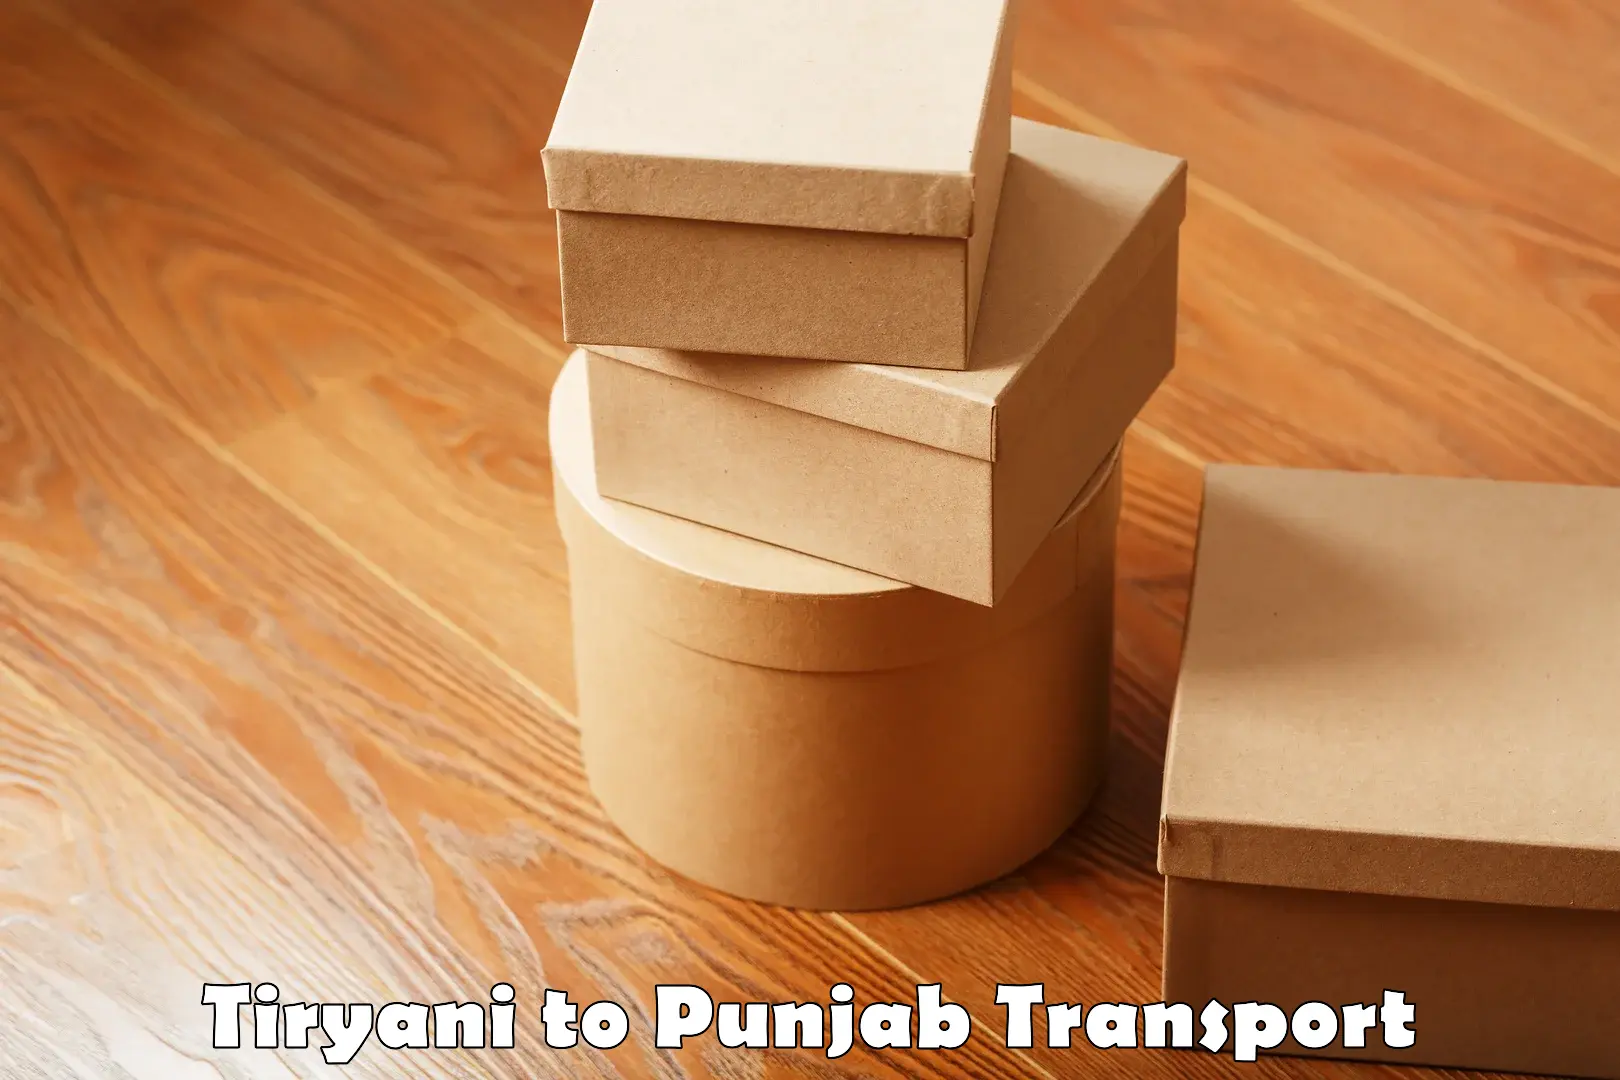 All India transport service Tiryani to Punjab